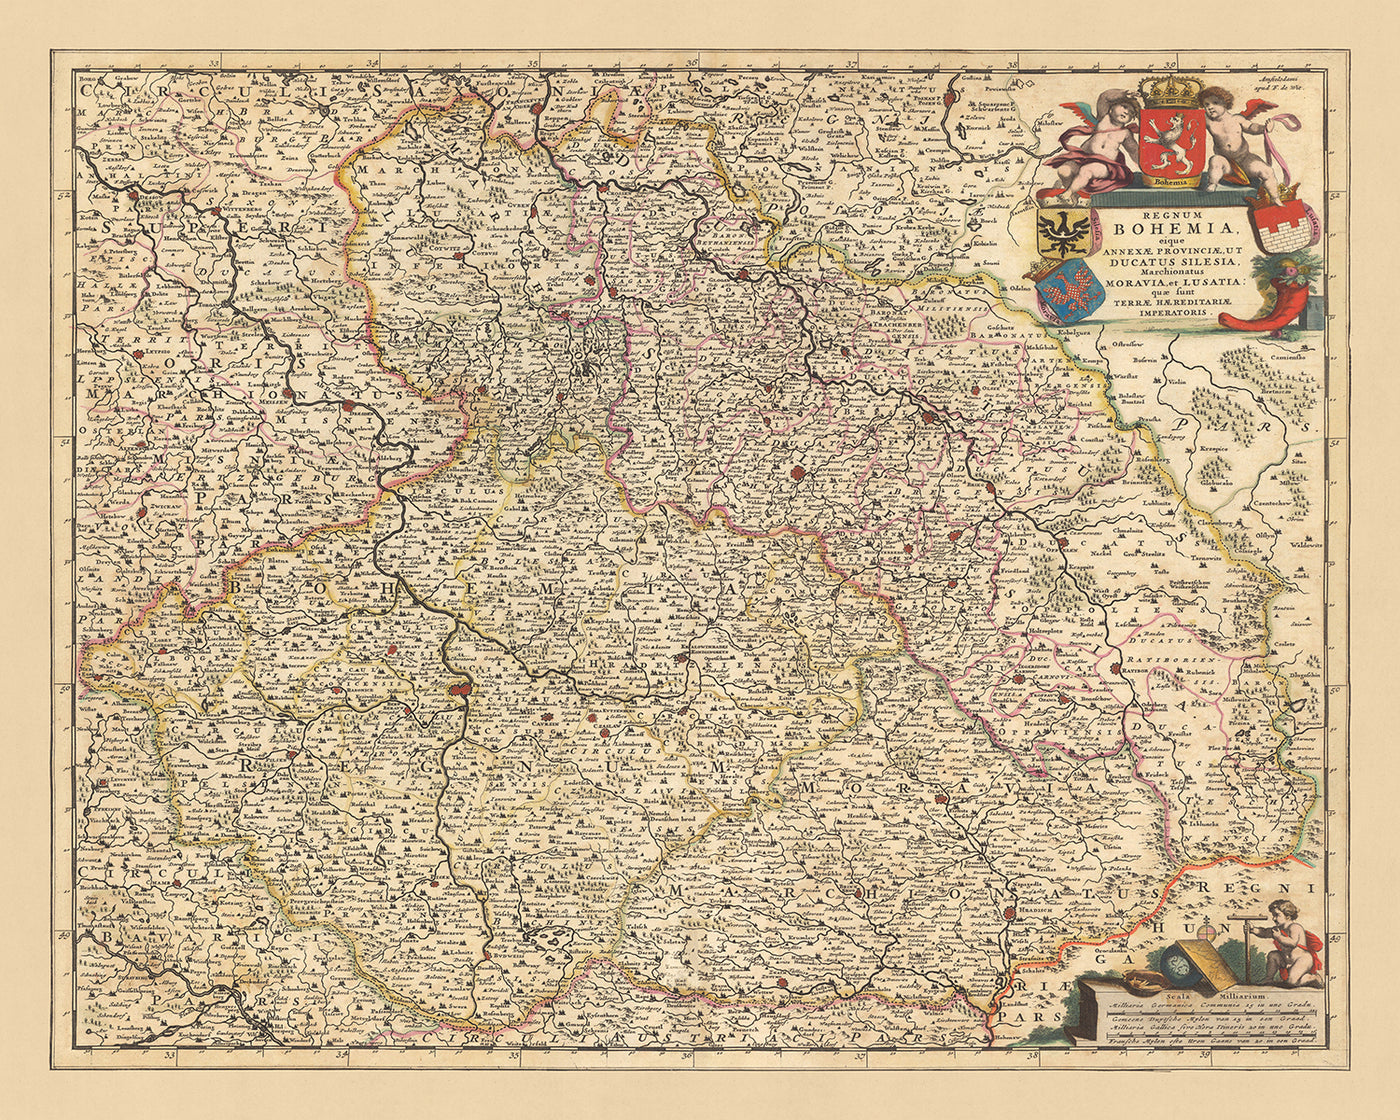 Old Map of Kingdom of Bohemia by Visscher, 1690: Prague, Brno, Ostrava, Wroclaw, Poznań